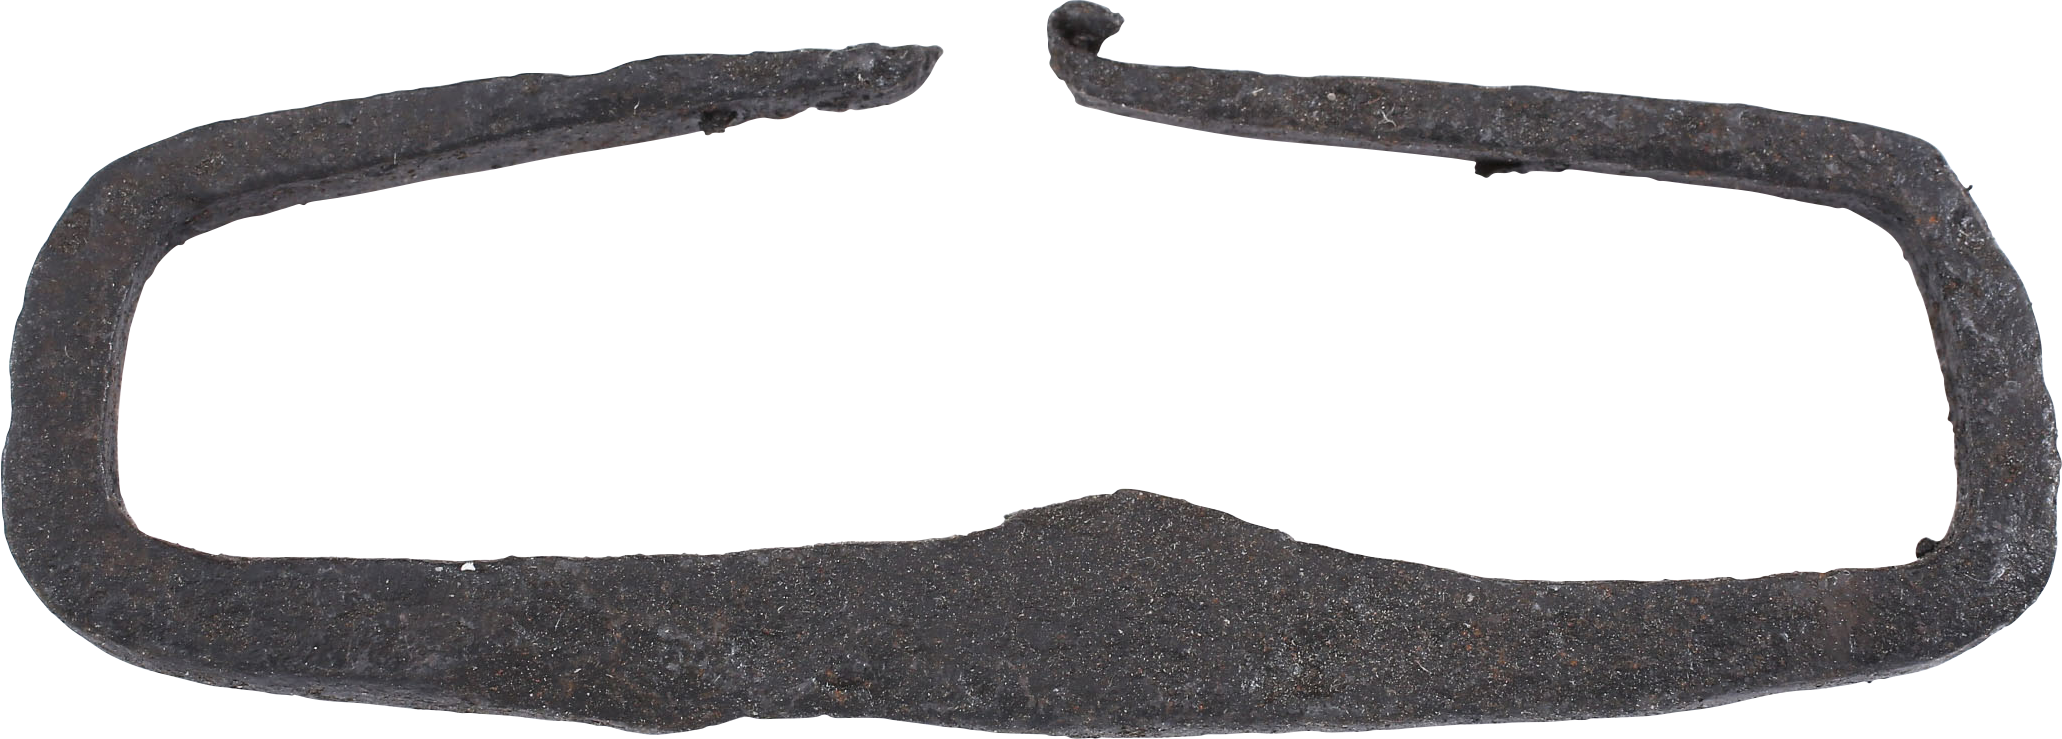 VIKING FLINT STRIKER/FIRE STARTER, 700-1000 AD - Fagan Arms